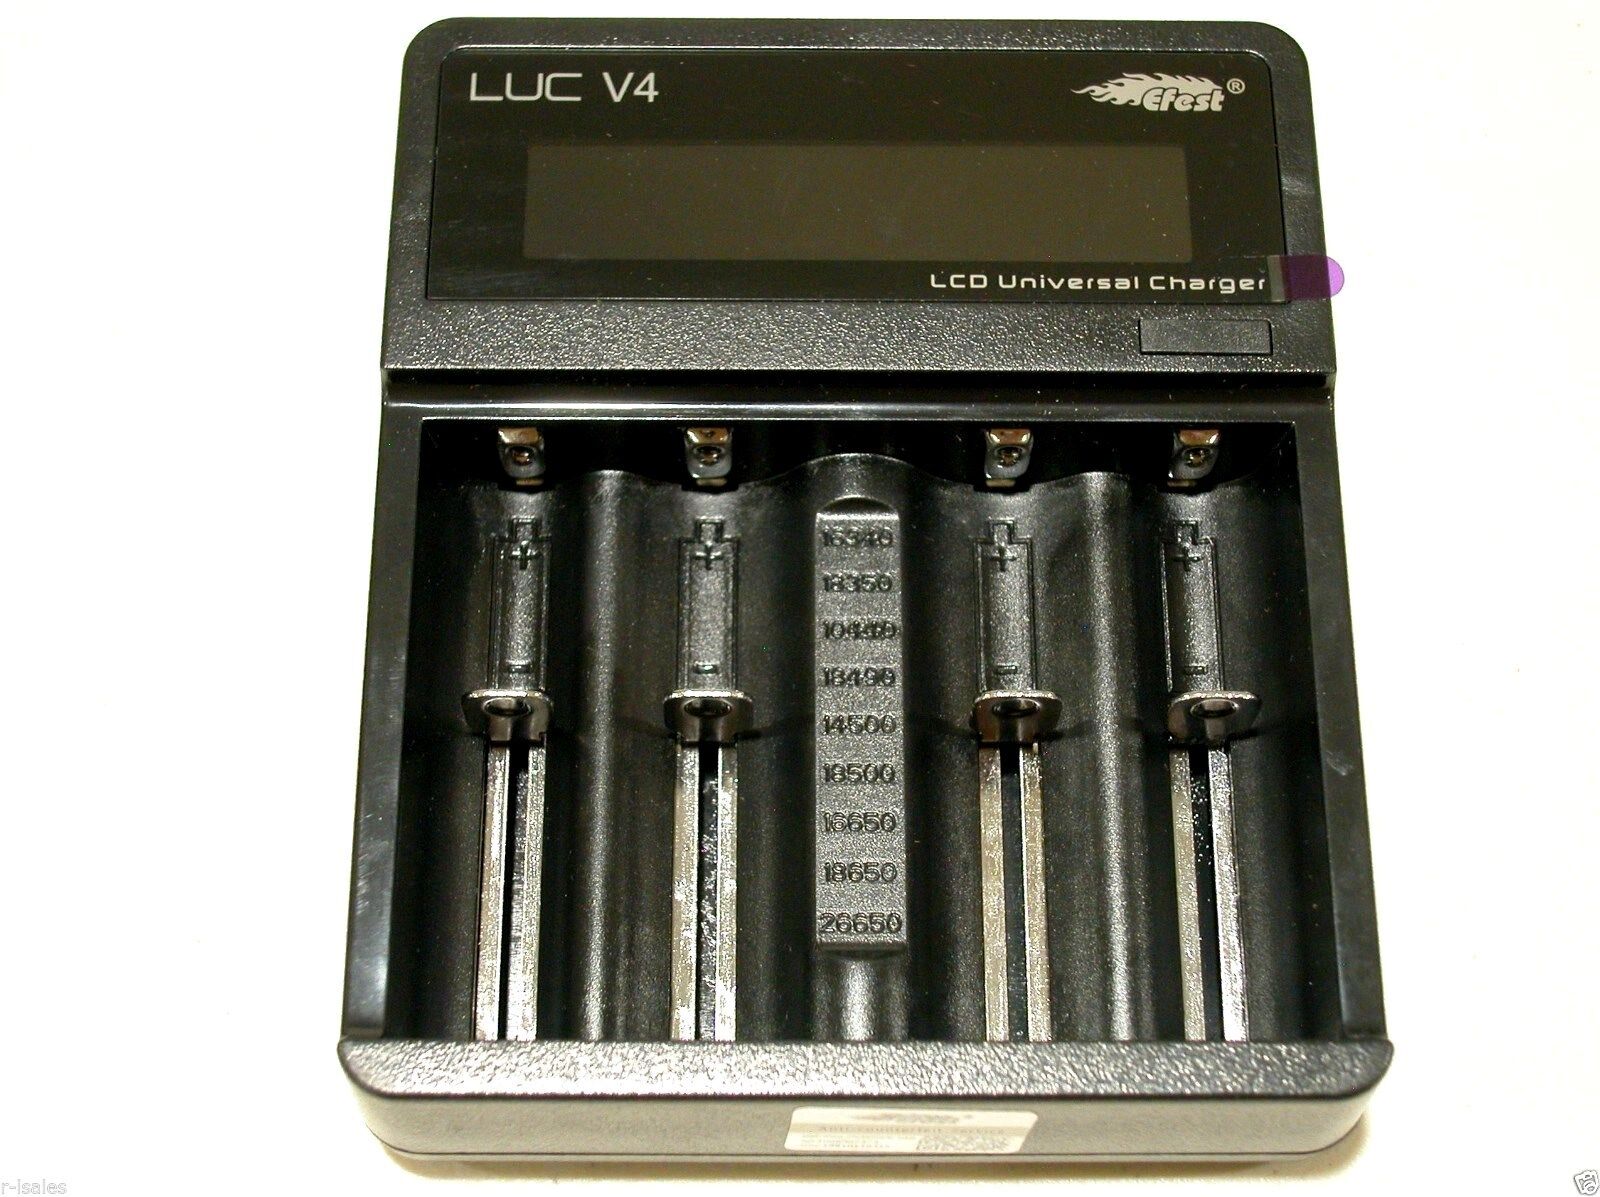 EFEST V4 LUC UNIVERSAL LCD CHARGER For 18650 1850014500 18350 16340 10440 3.7v  EFEST LUC V4 - фотография #2